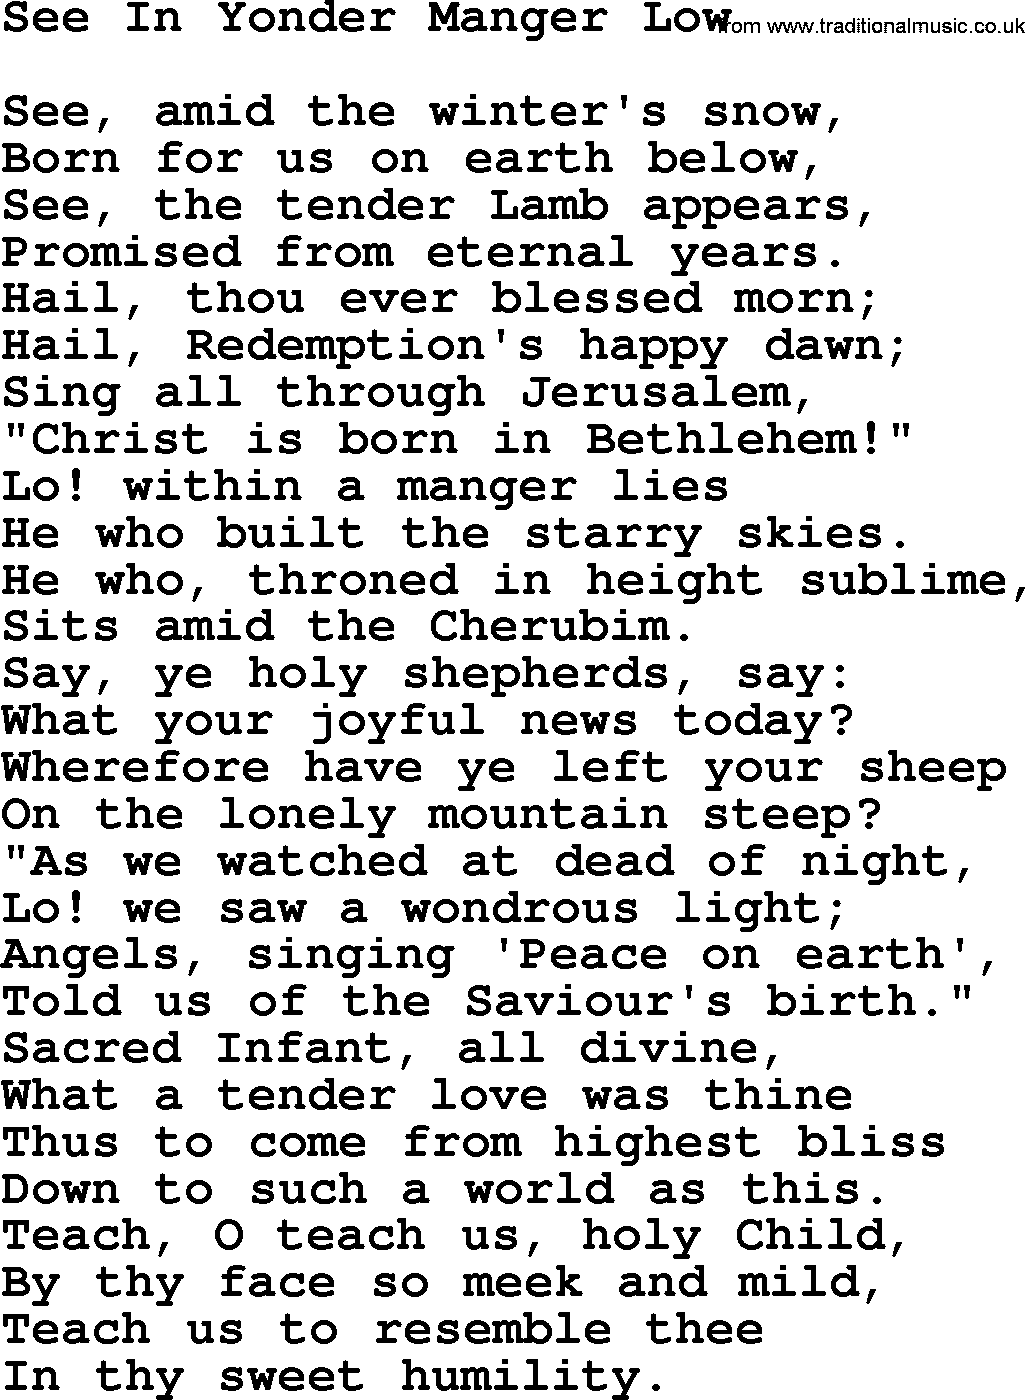 Catholic Hymn: See In Yonder Manger Low lyrics with PDF